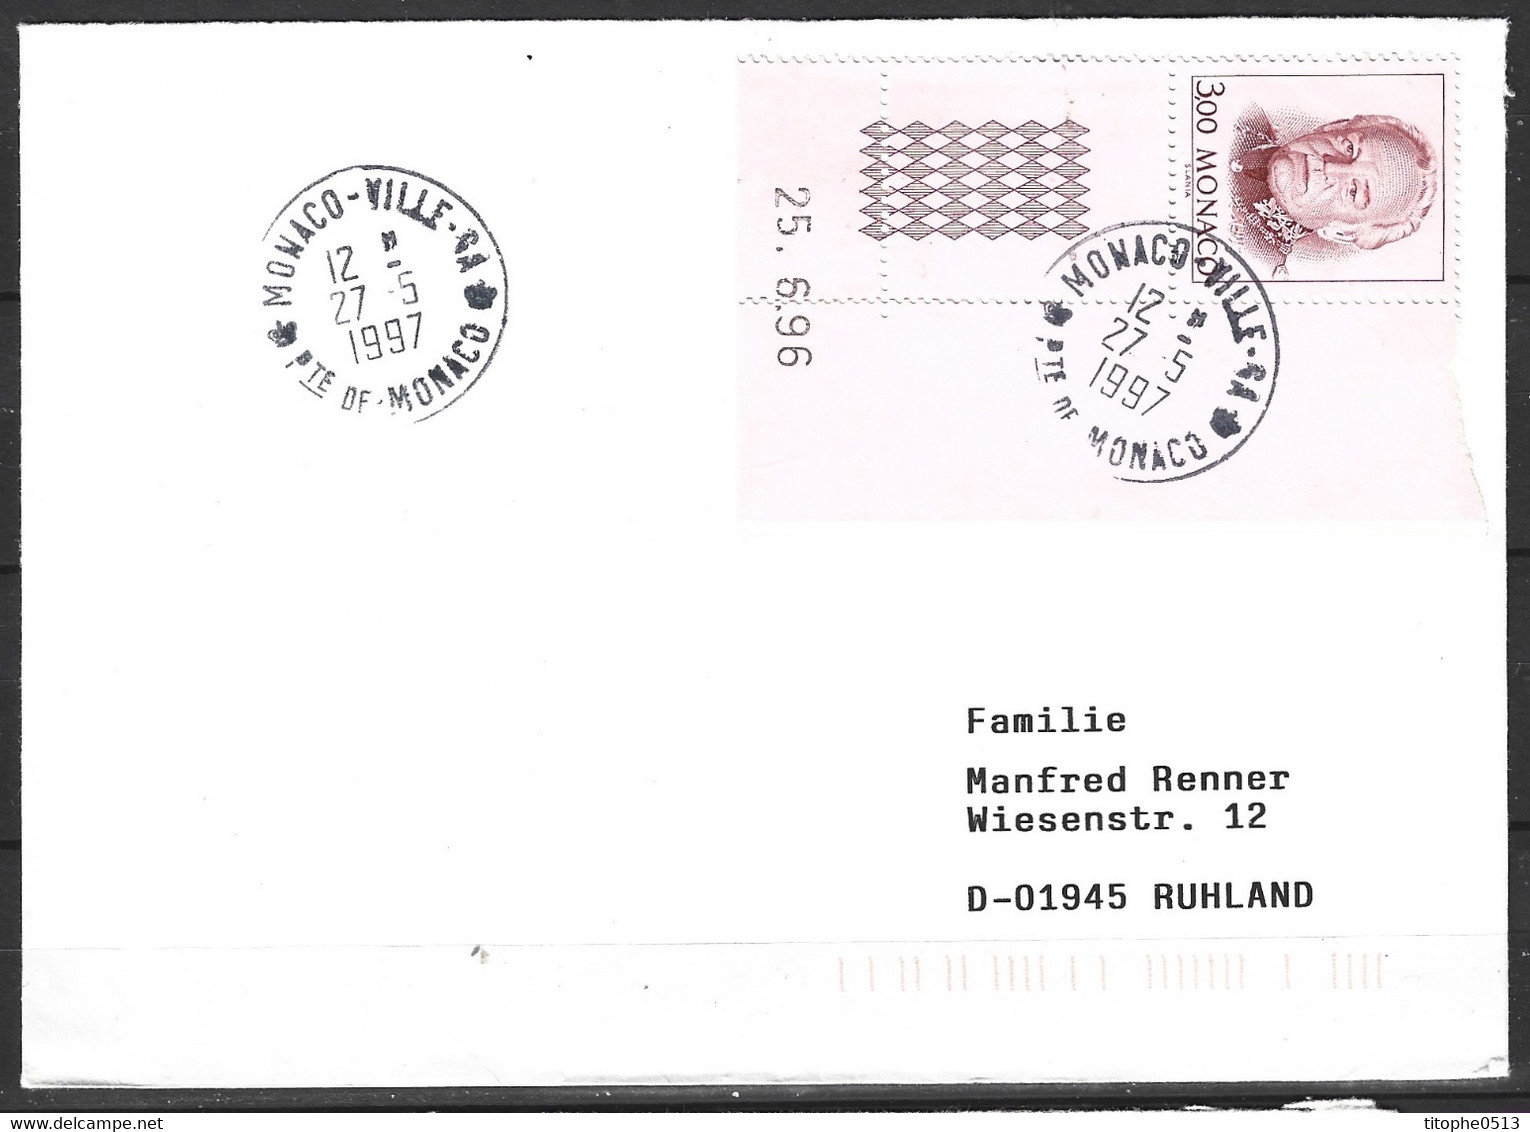 MONACO. N°2055 De 1996 Sur Enveloppe Ayant Circulé. Prince Rainier III. - Lettres & Documents